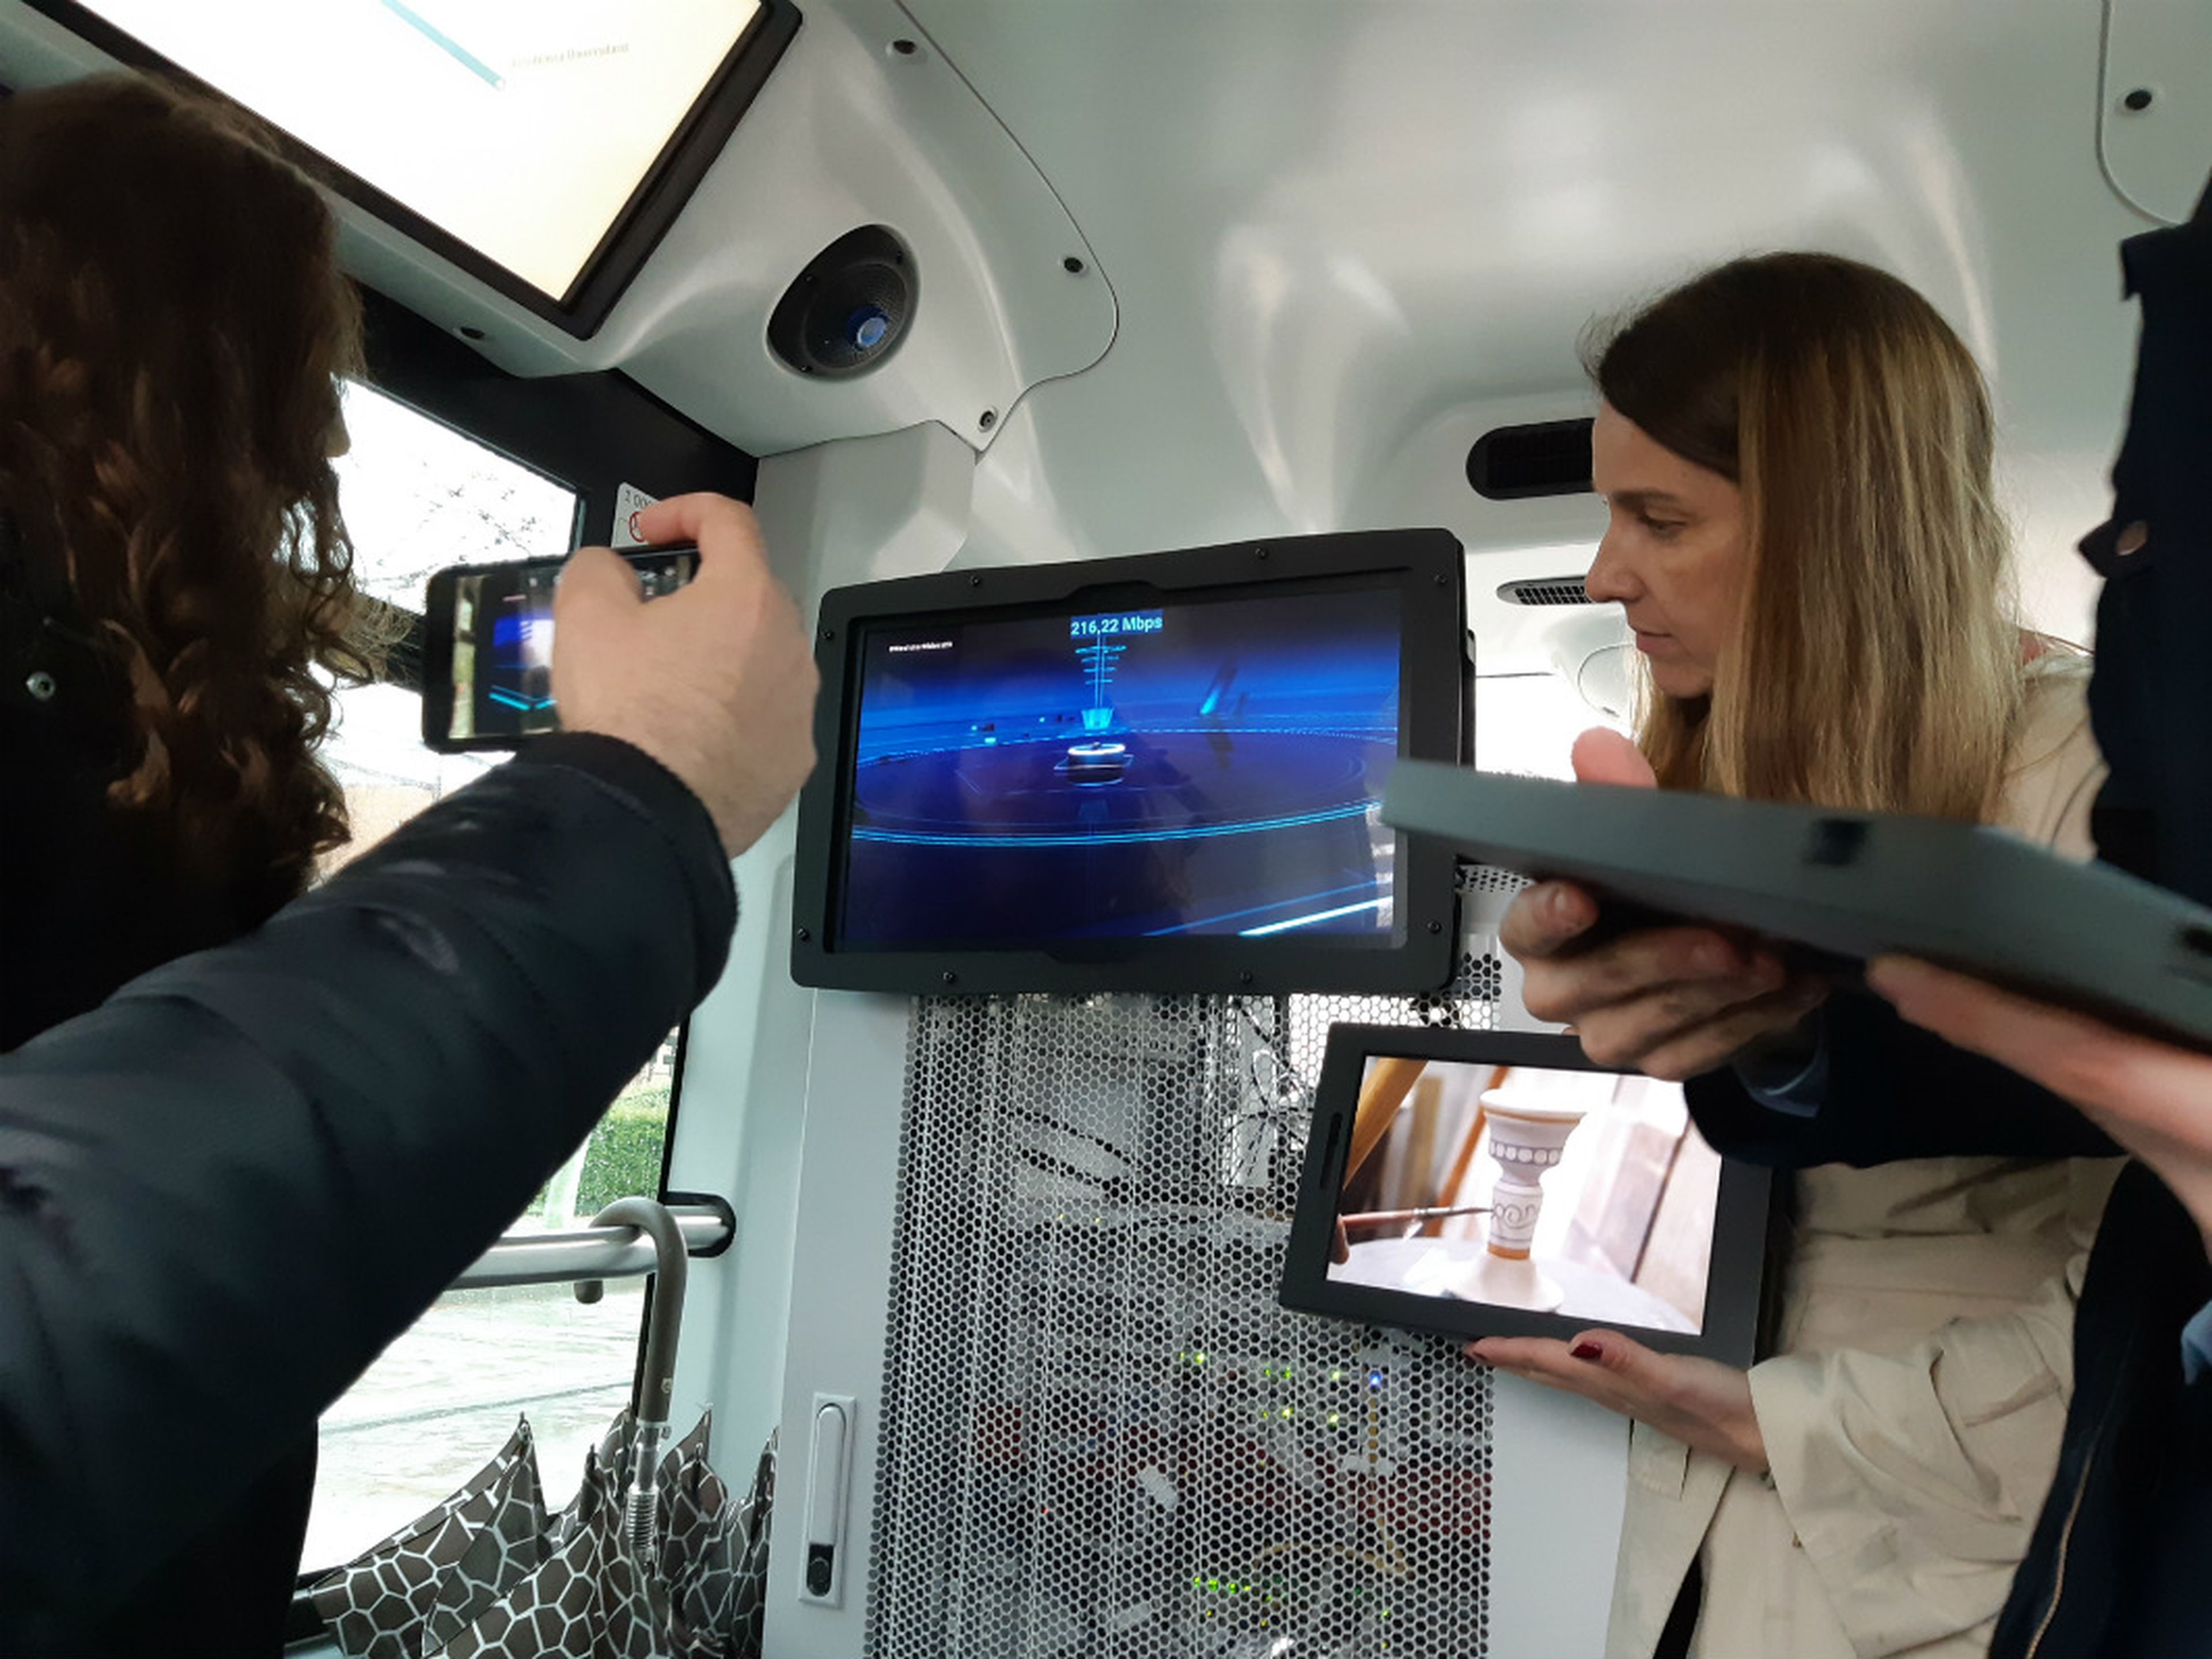 Presentación del servicio multimedia a bordo de un vehículo autónomo en Talavera de la Reina, una tecnología posible gracias al 5G.